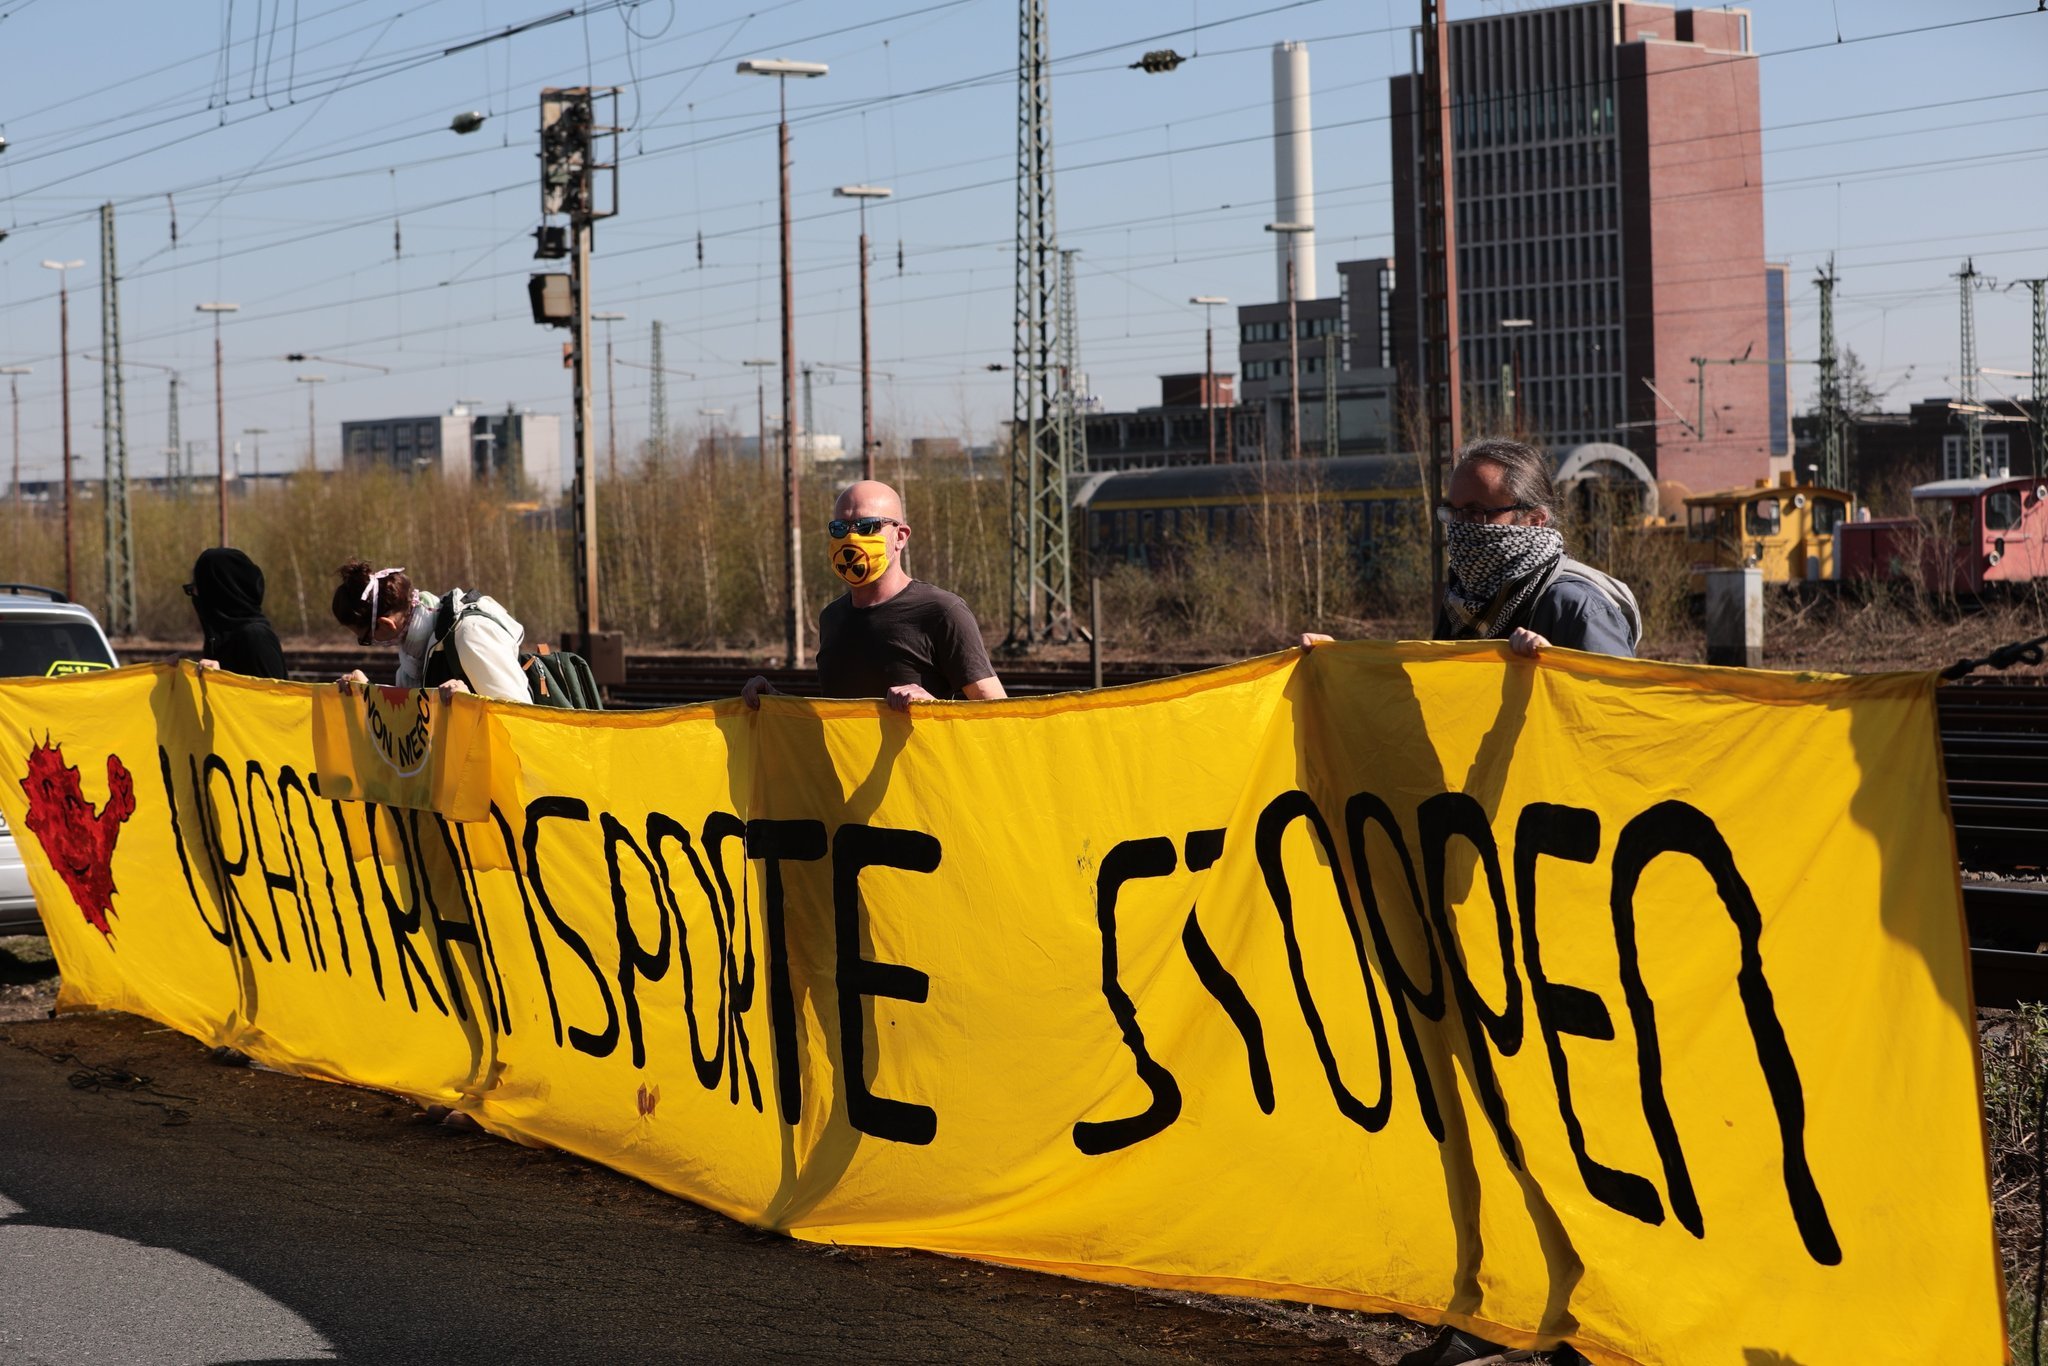 6.4.2020 - Protestplakat Urantransporte stoppen